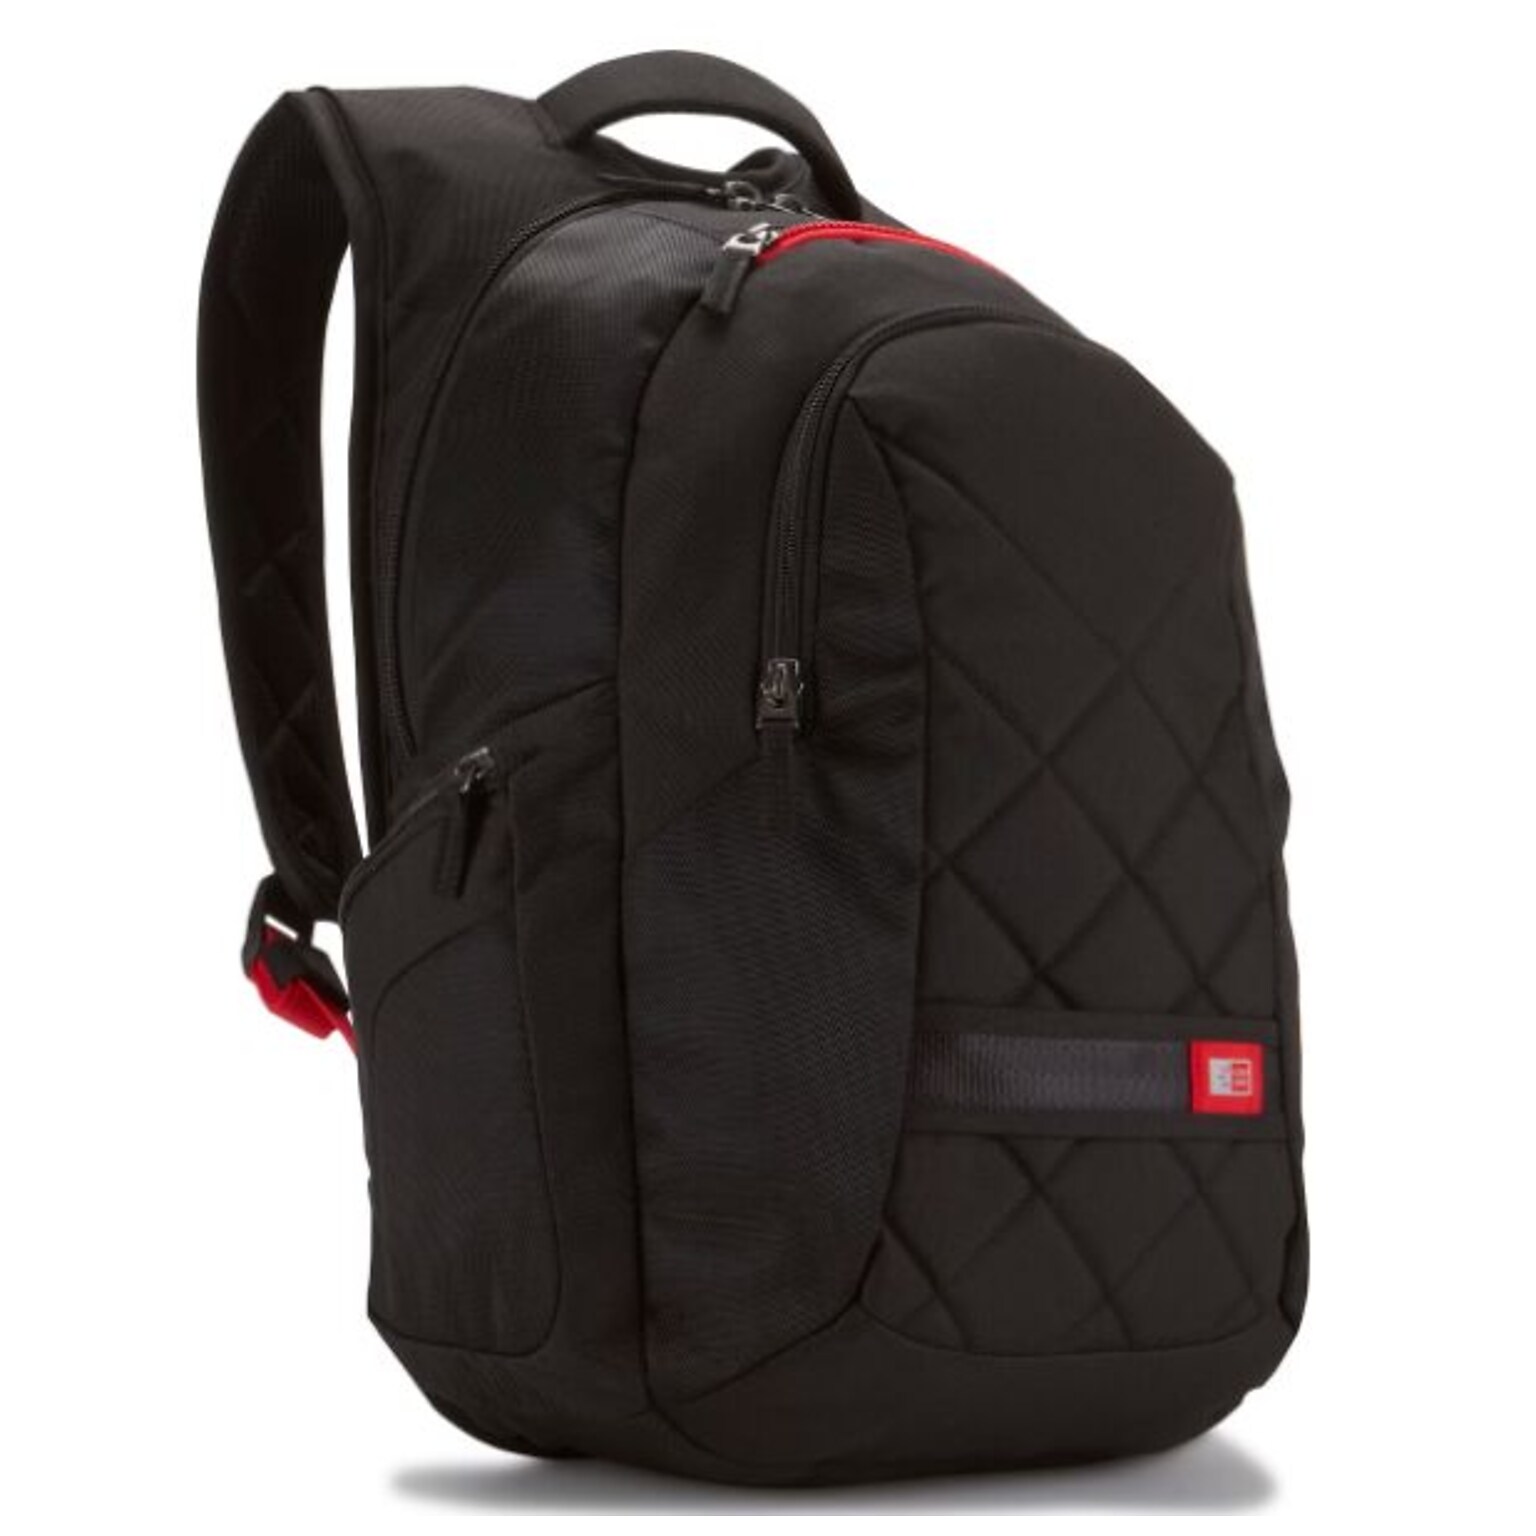 Case Logic DLBP-116 16 Laptop Backpack